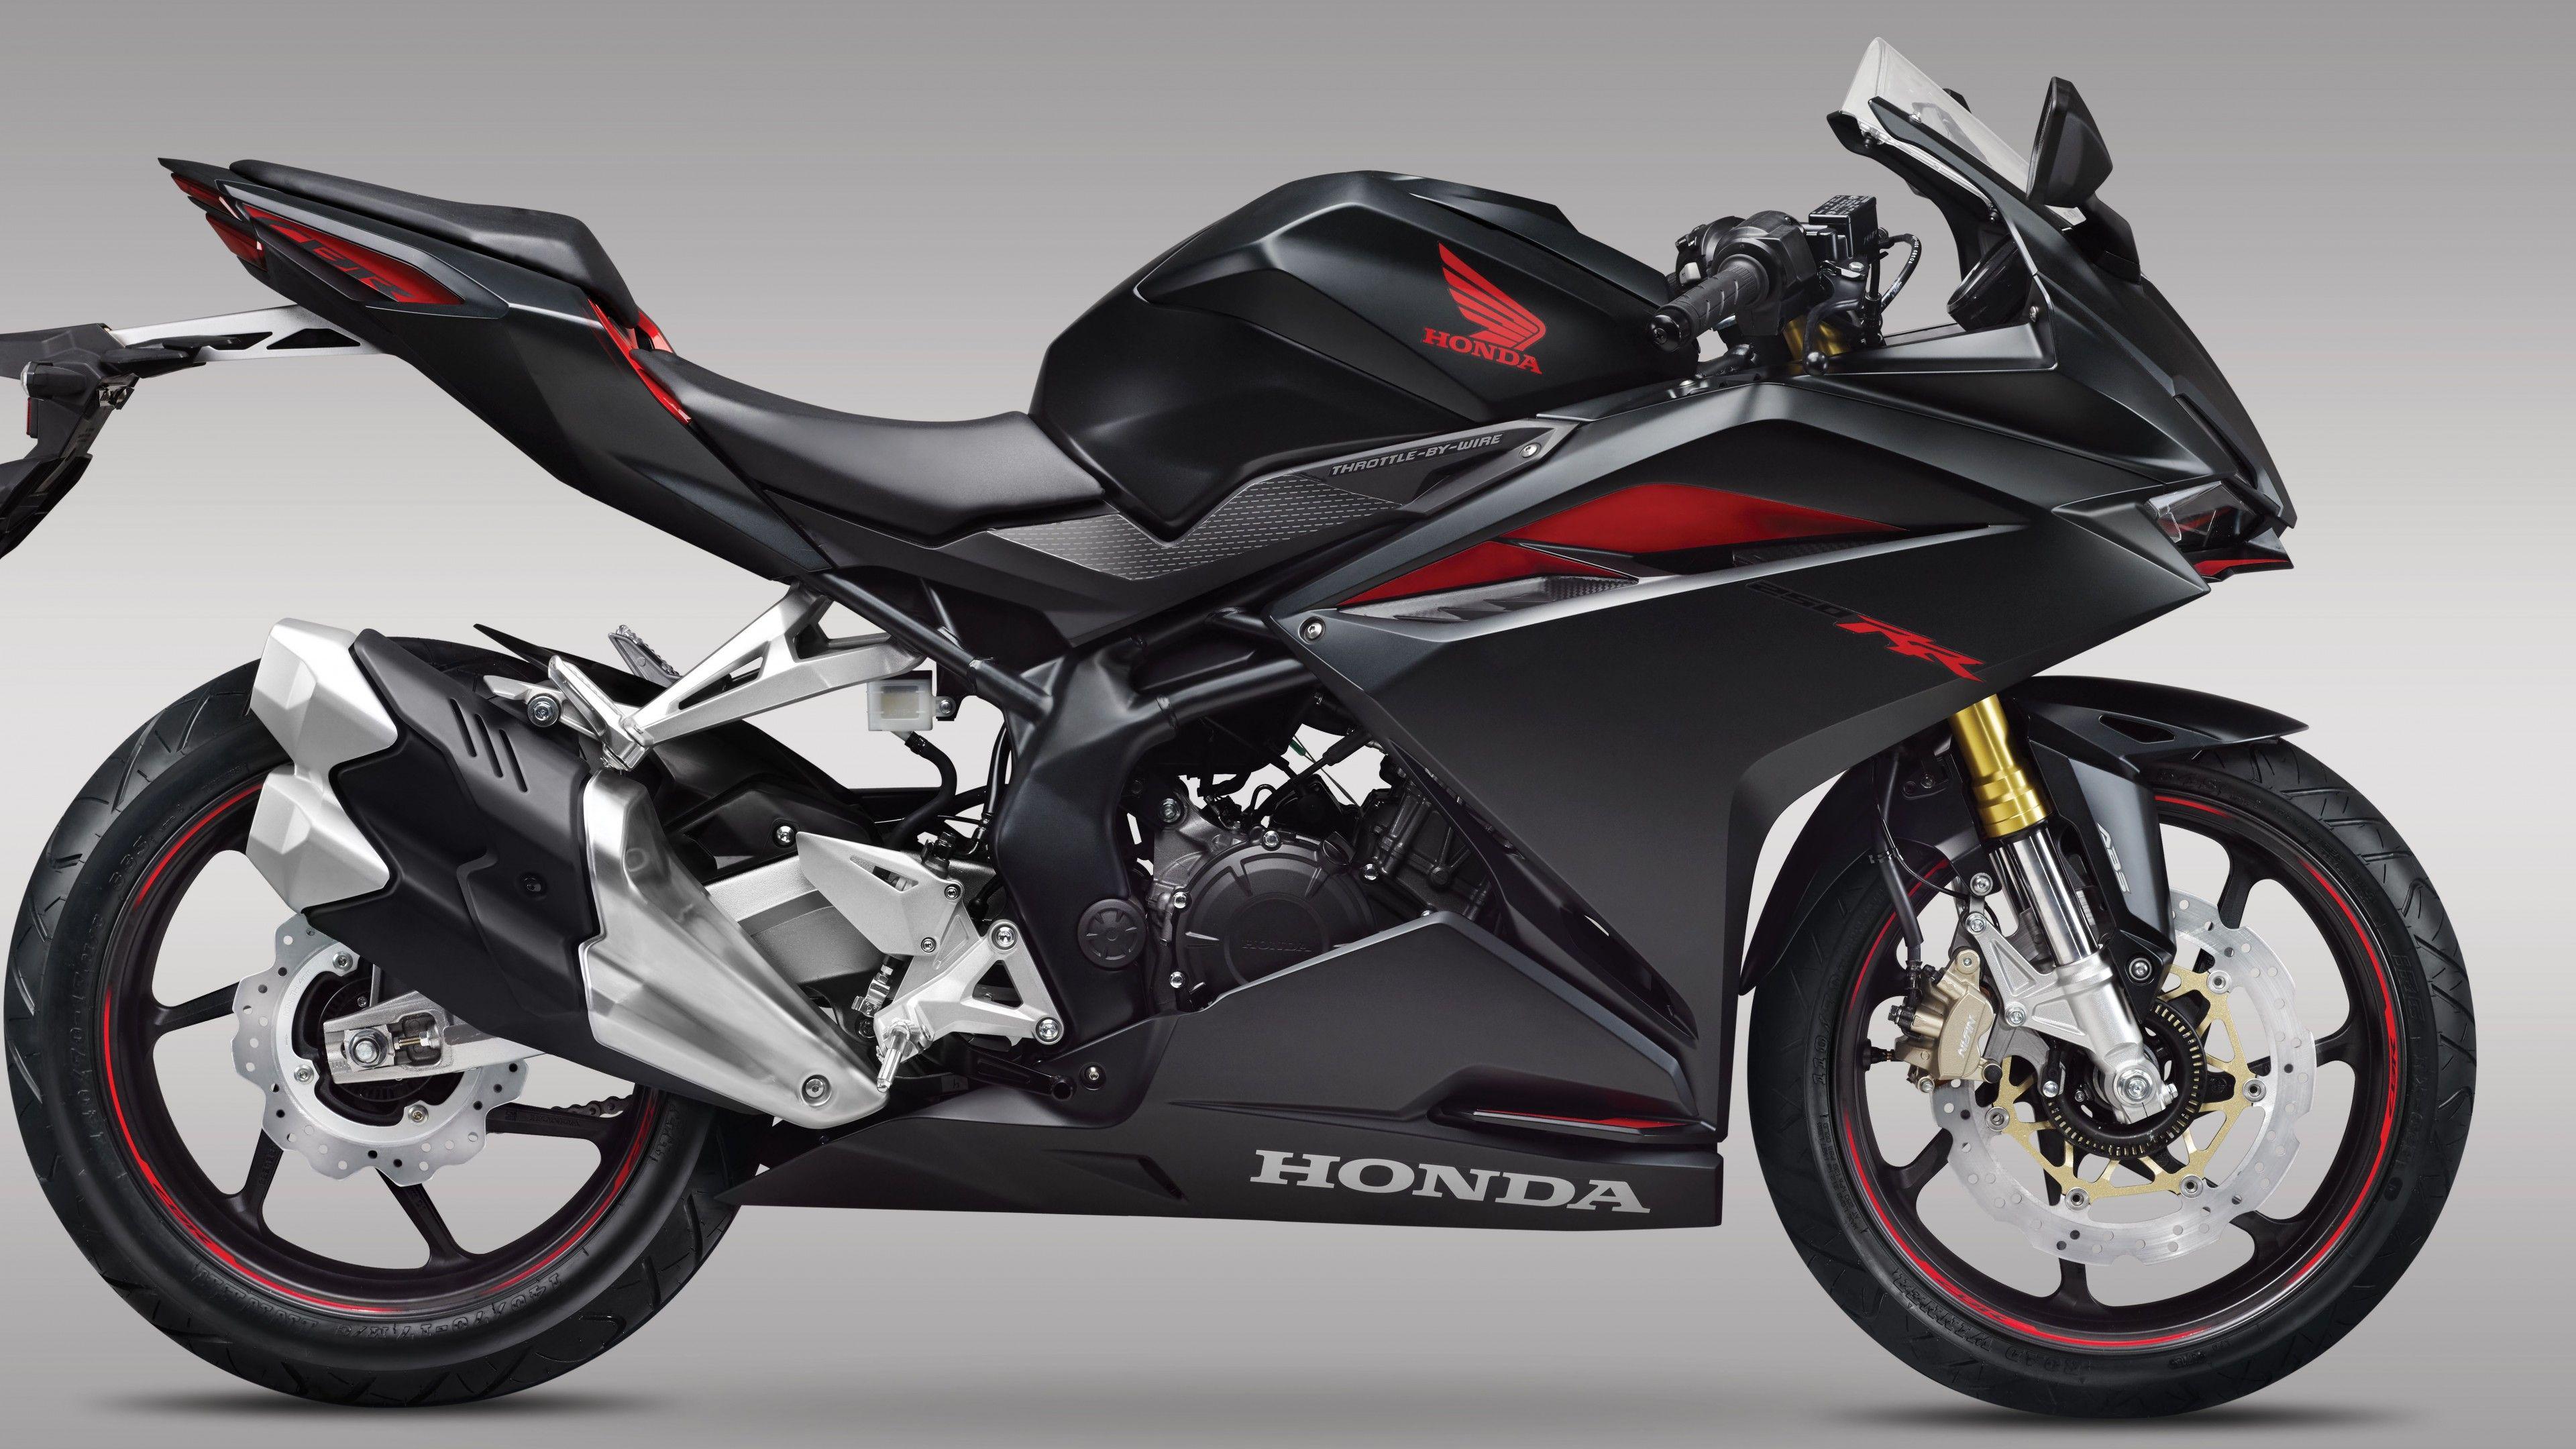 Honda Sport Motorcycle Wallpapers Top Free Honda Sport Motorcycle Backgrounds Wallpaperaccess 6573